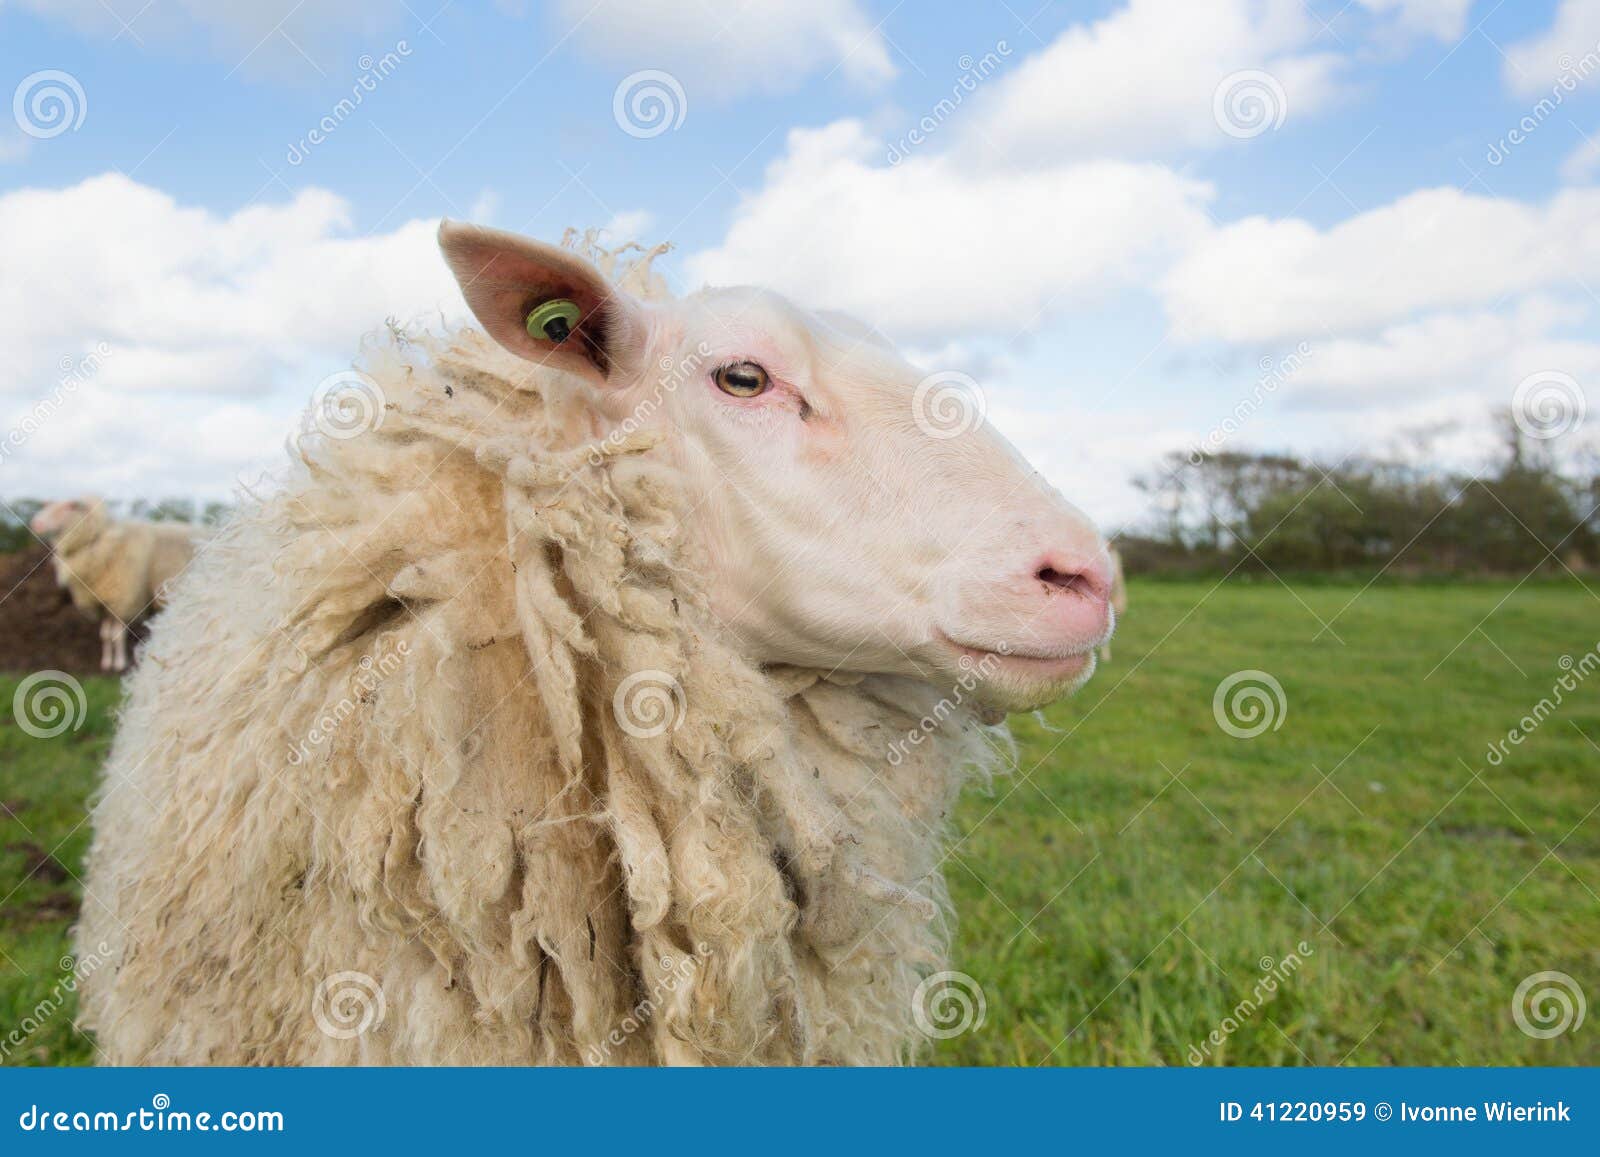 sheep at dutch wadden island terschelling